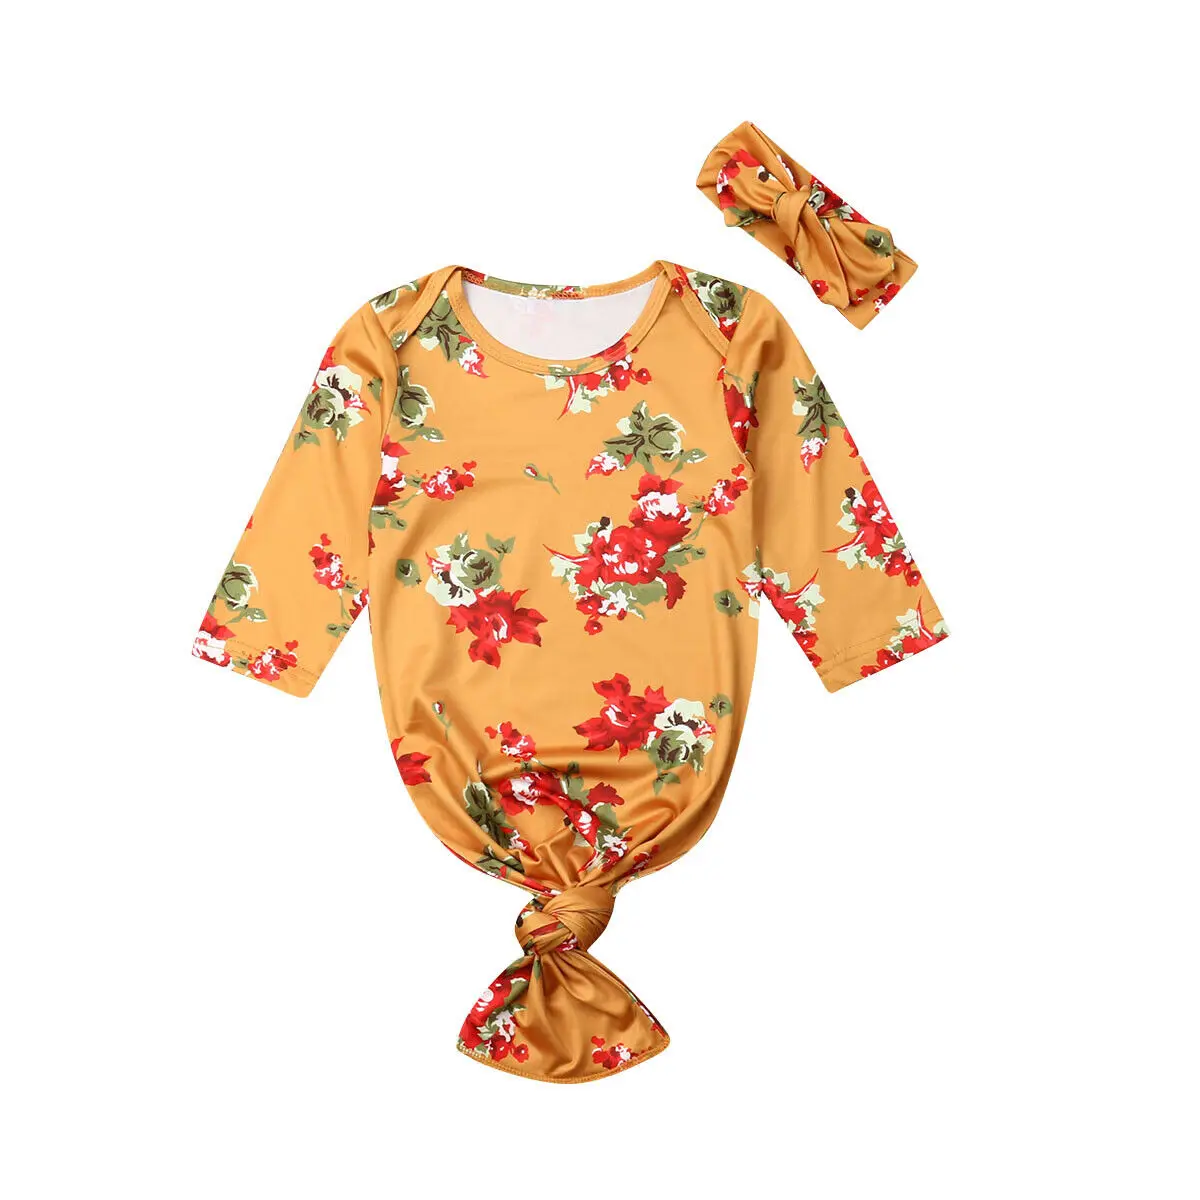 4 цвета для малышей, с цветочным узором постельное белье осенью и зимой Одеяло спальный мешок оголовье, набор для детей от 0 до 6 месяцев - Цвет: Цвет: желтый